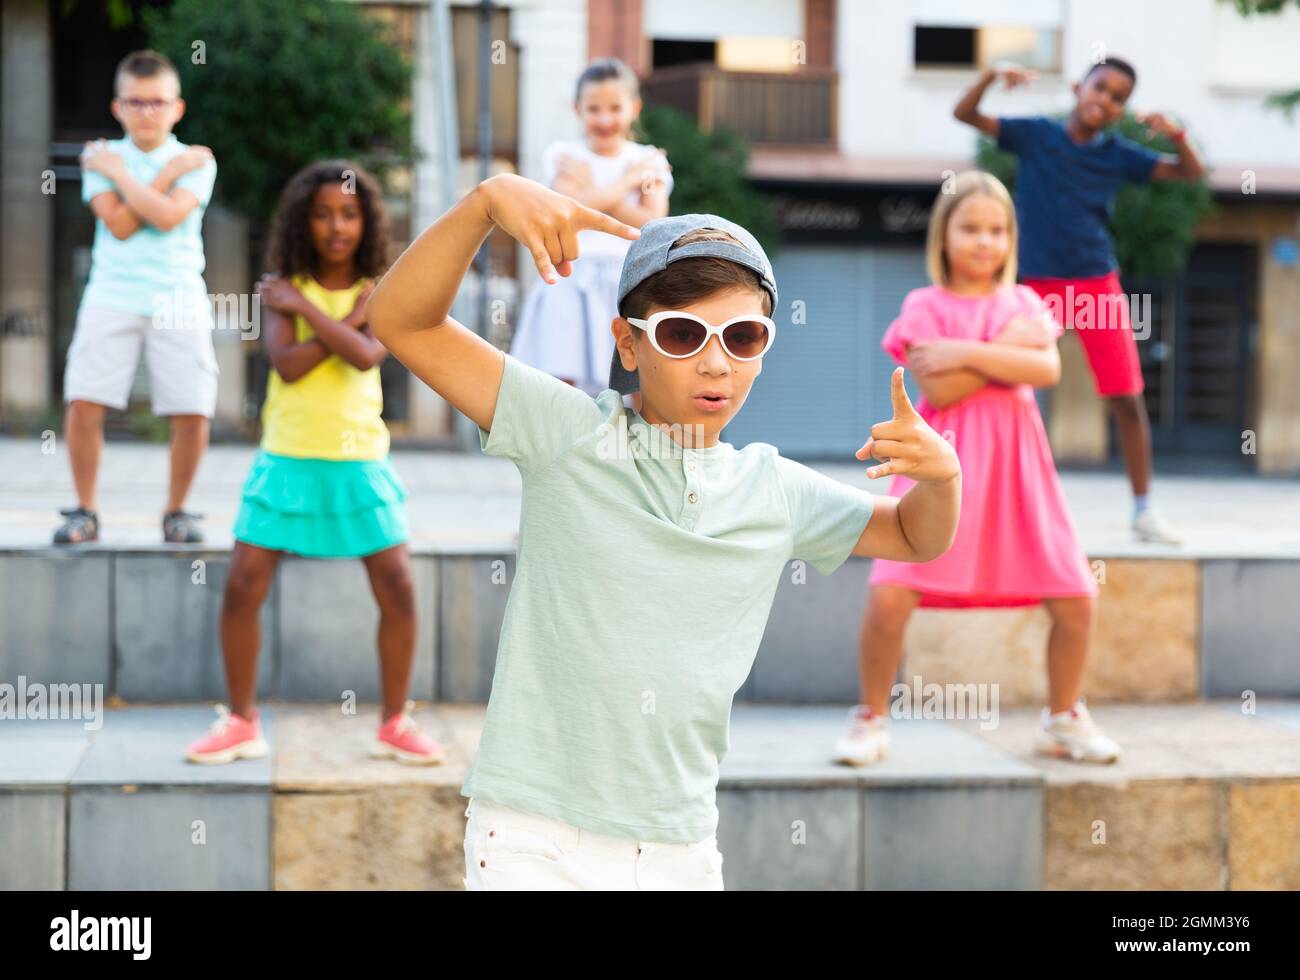 Preteen boy in sunglasses dancing krump with tweens on city street Stock Photo